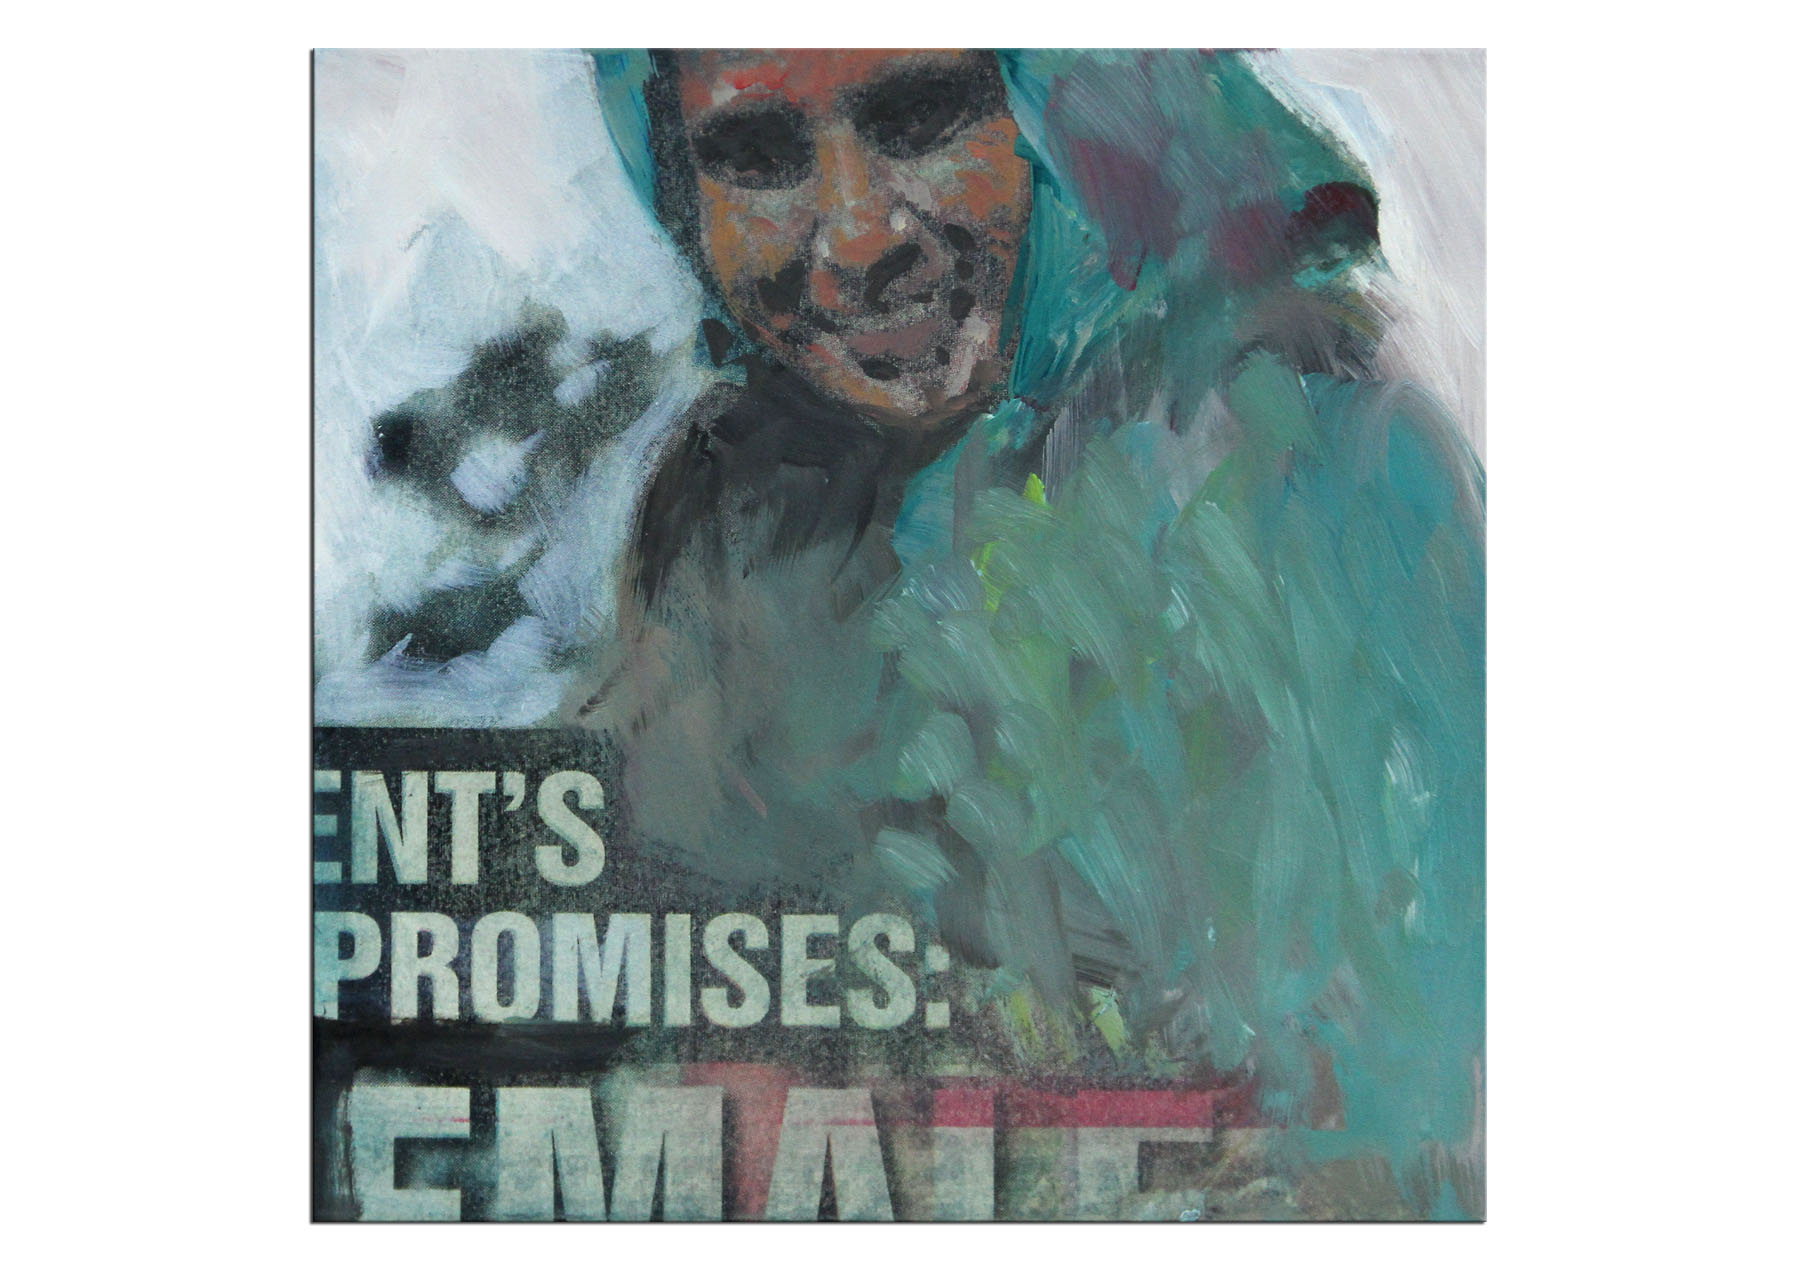 Zeitgenössische Malerei von Uwe Fehrmann: "Promises" (A)